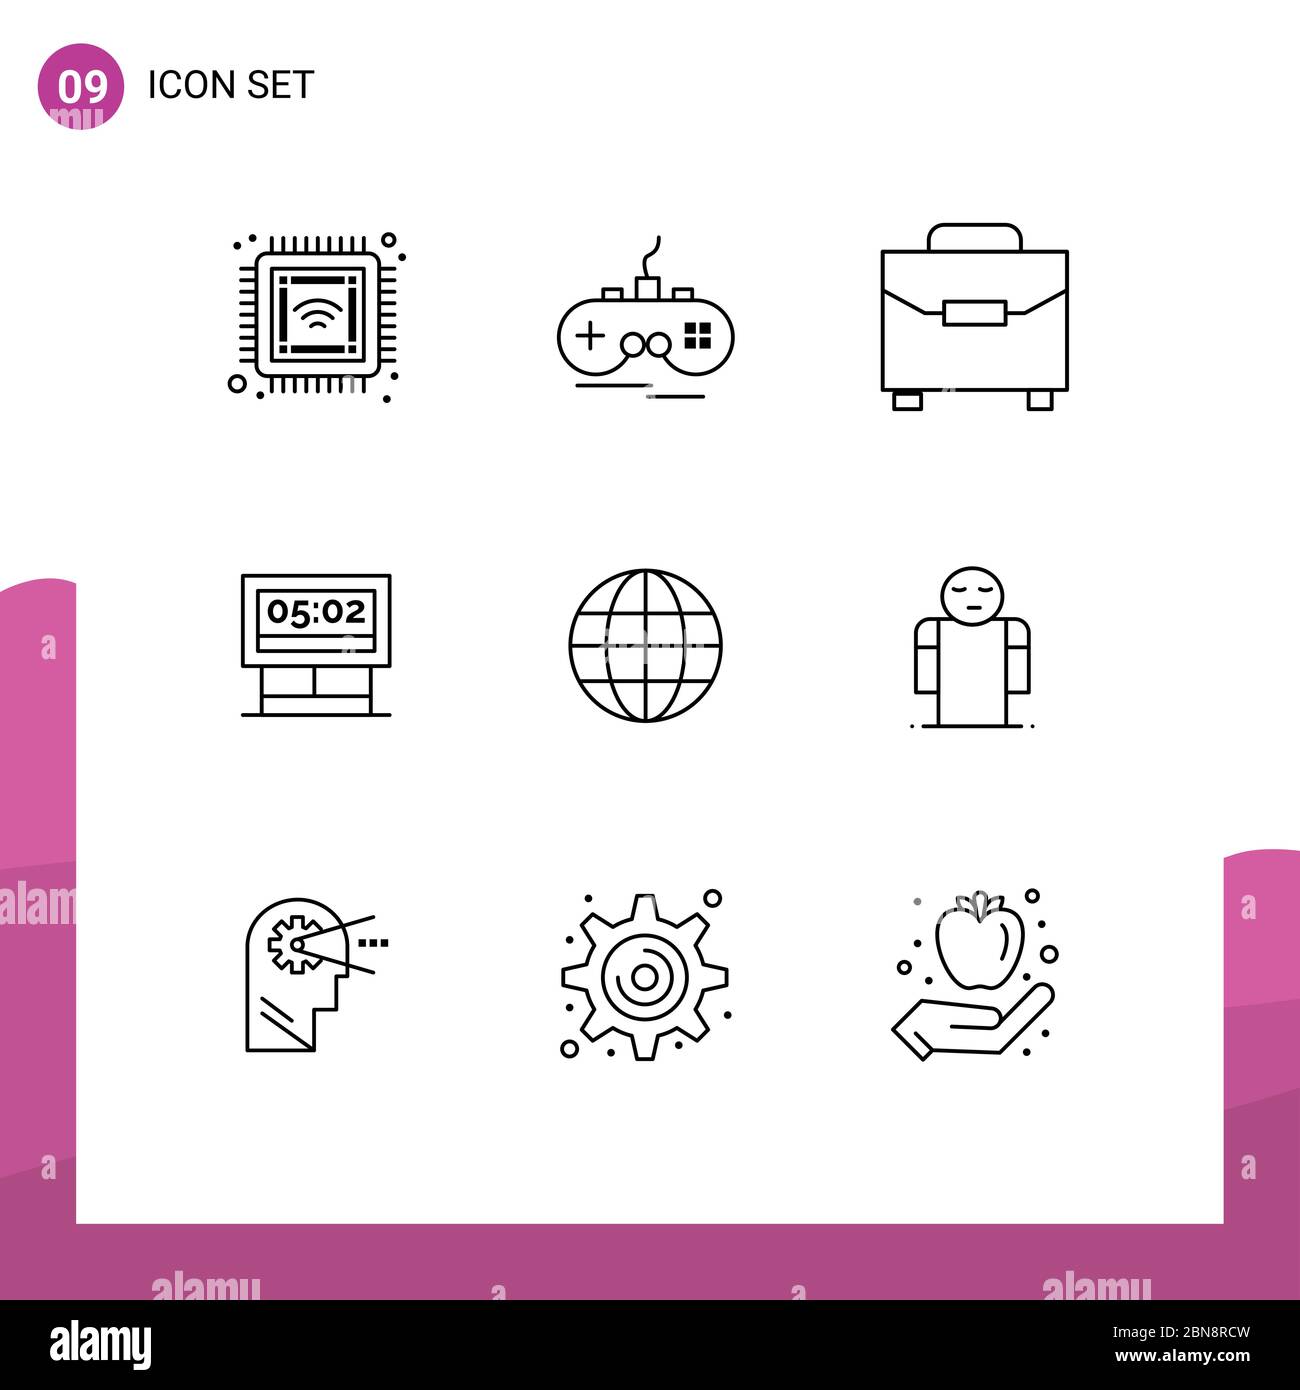 Universal Icon Symbole Gruppe von 9 modernen Konturen der Globus, Anzeigetafel, digital, Partitur, Brett editierbar Vektor Design-Elemente Stock Vektor